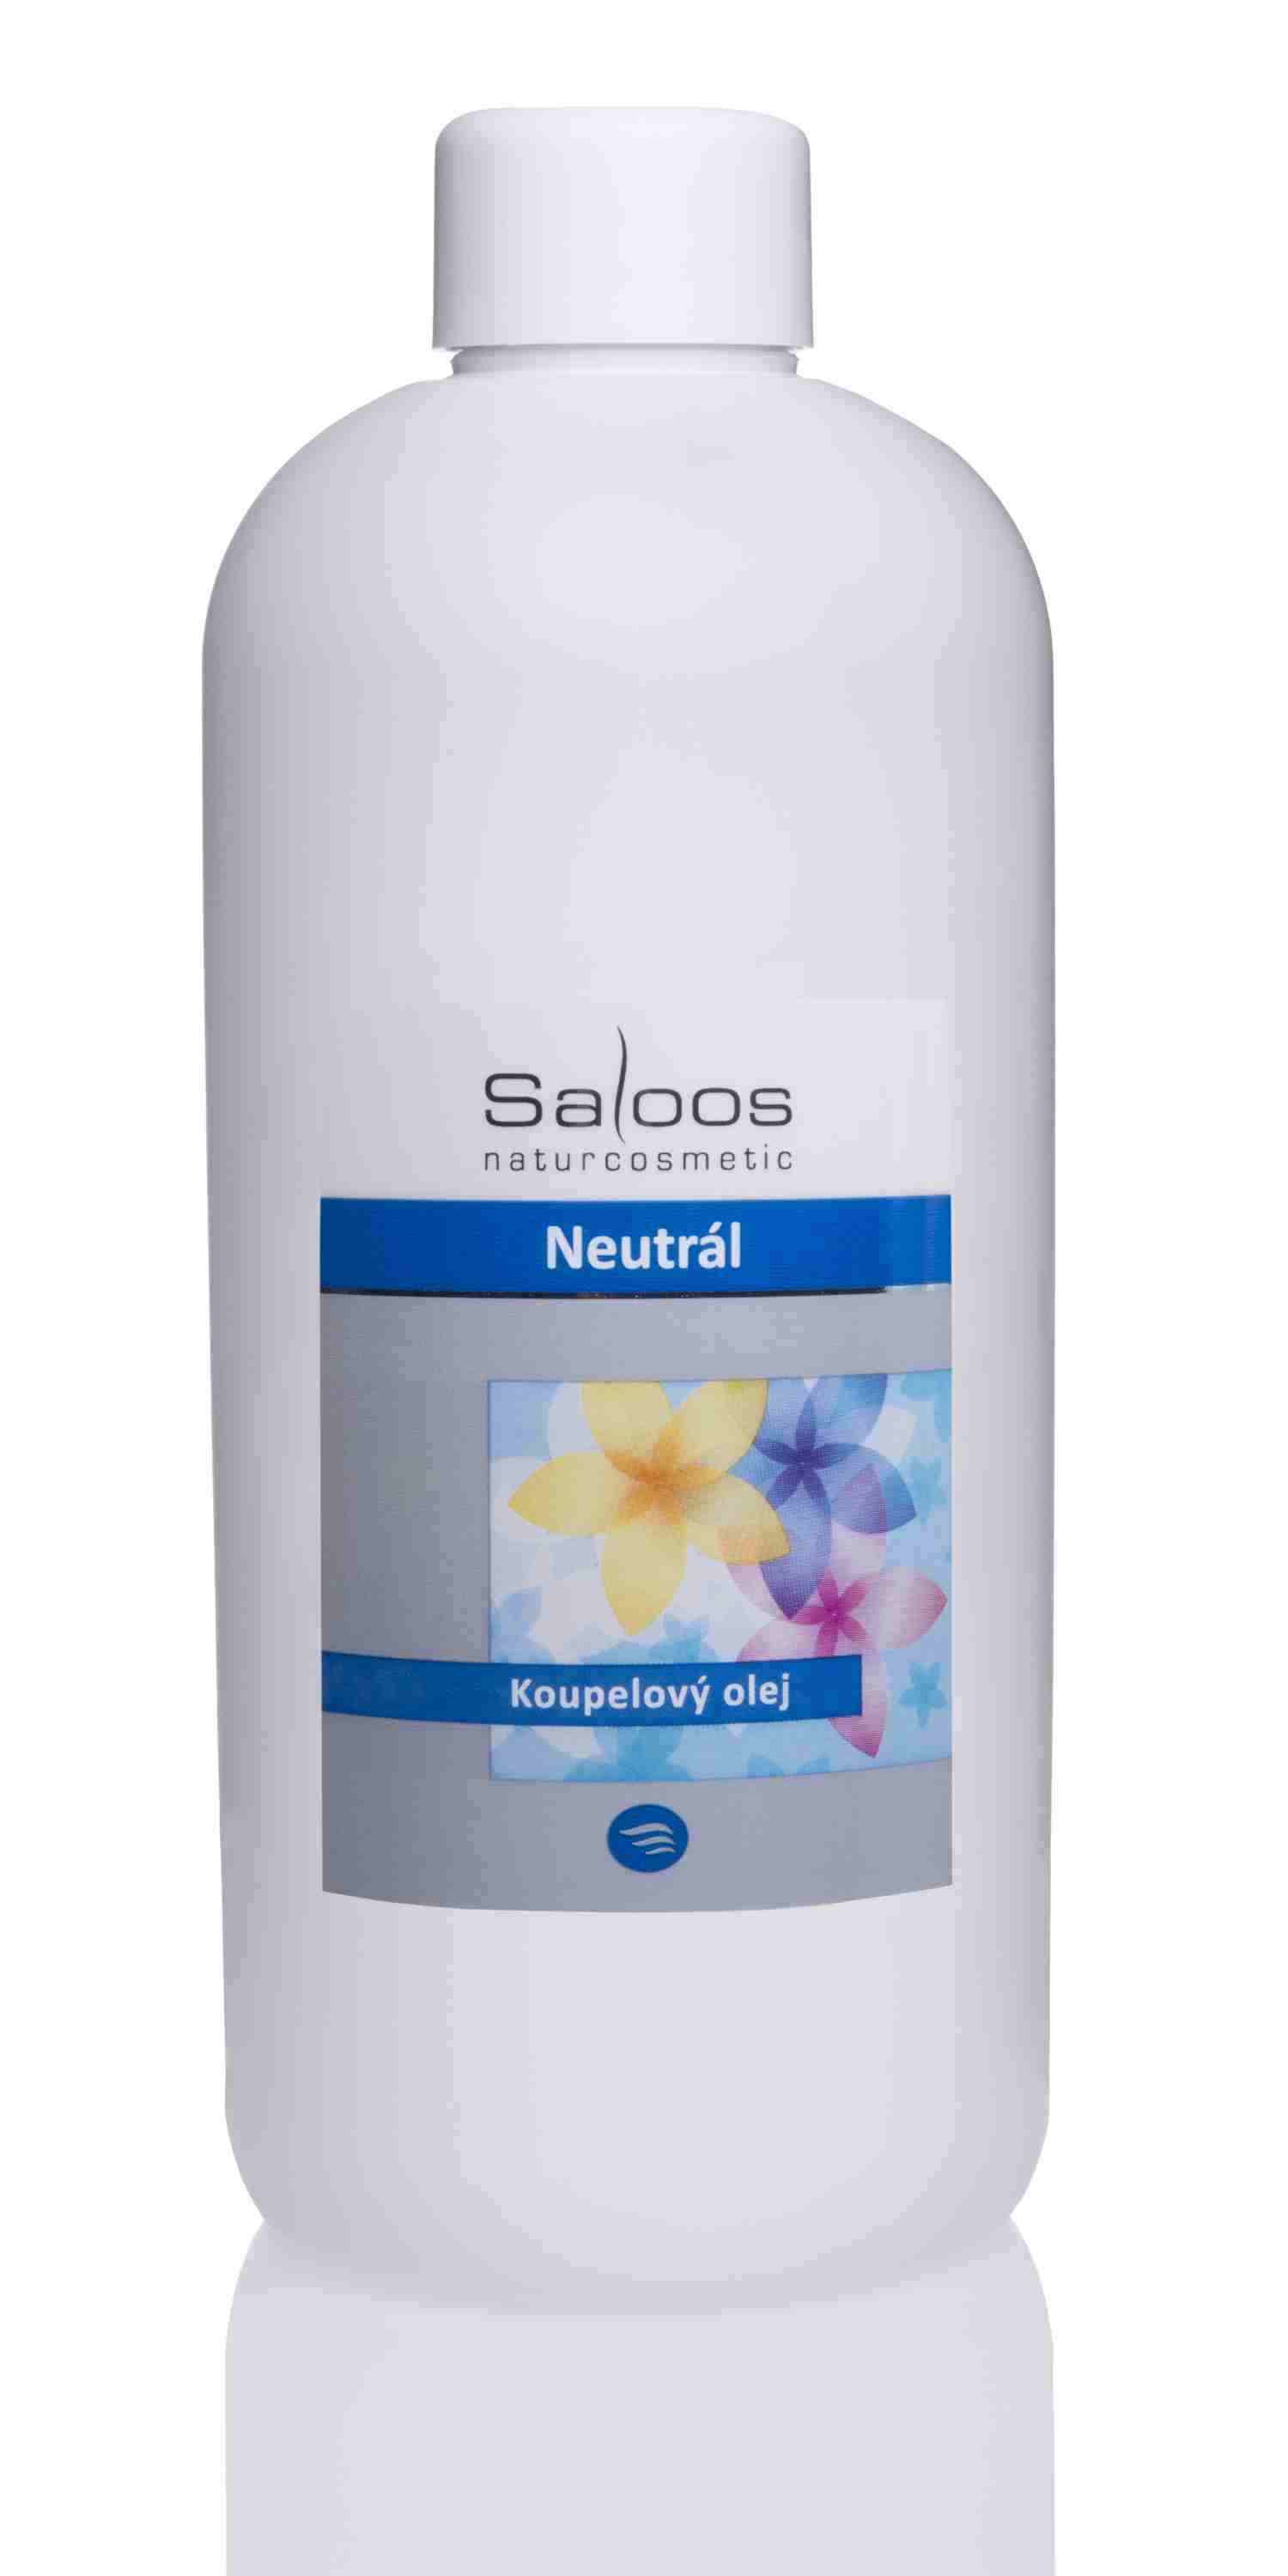 Saloos Neutrální - koupelový olej Balení: 1000 ml